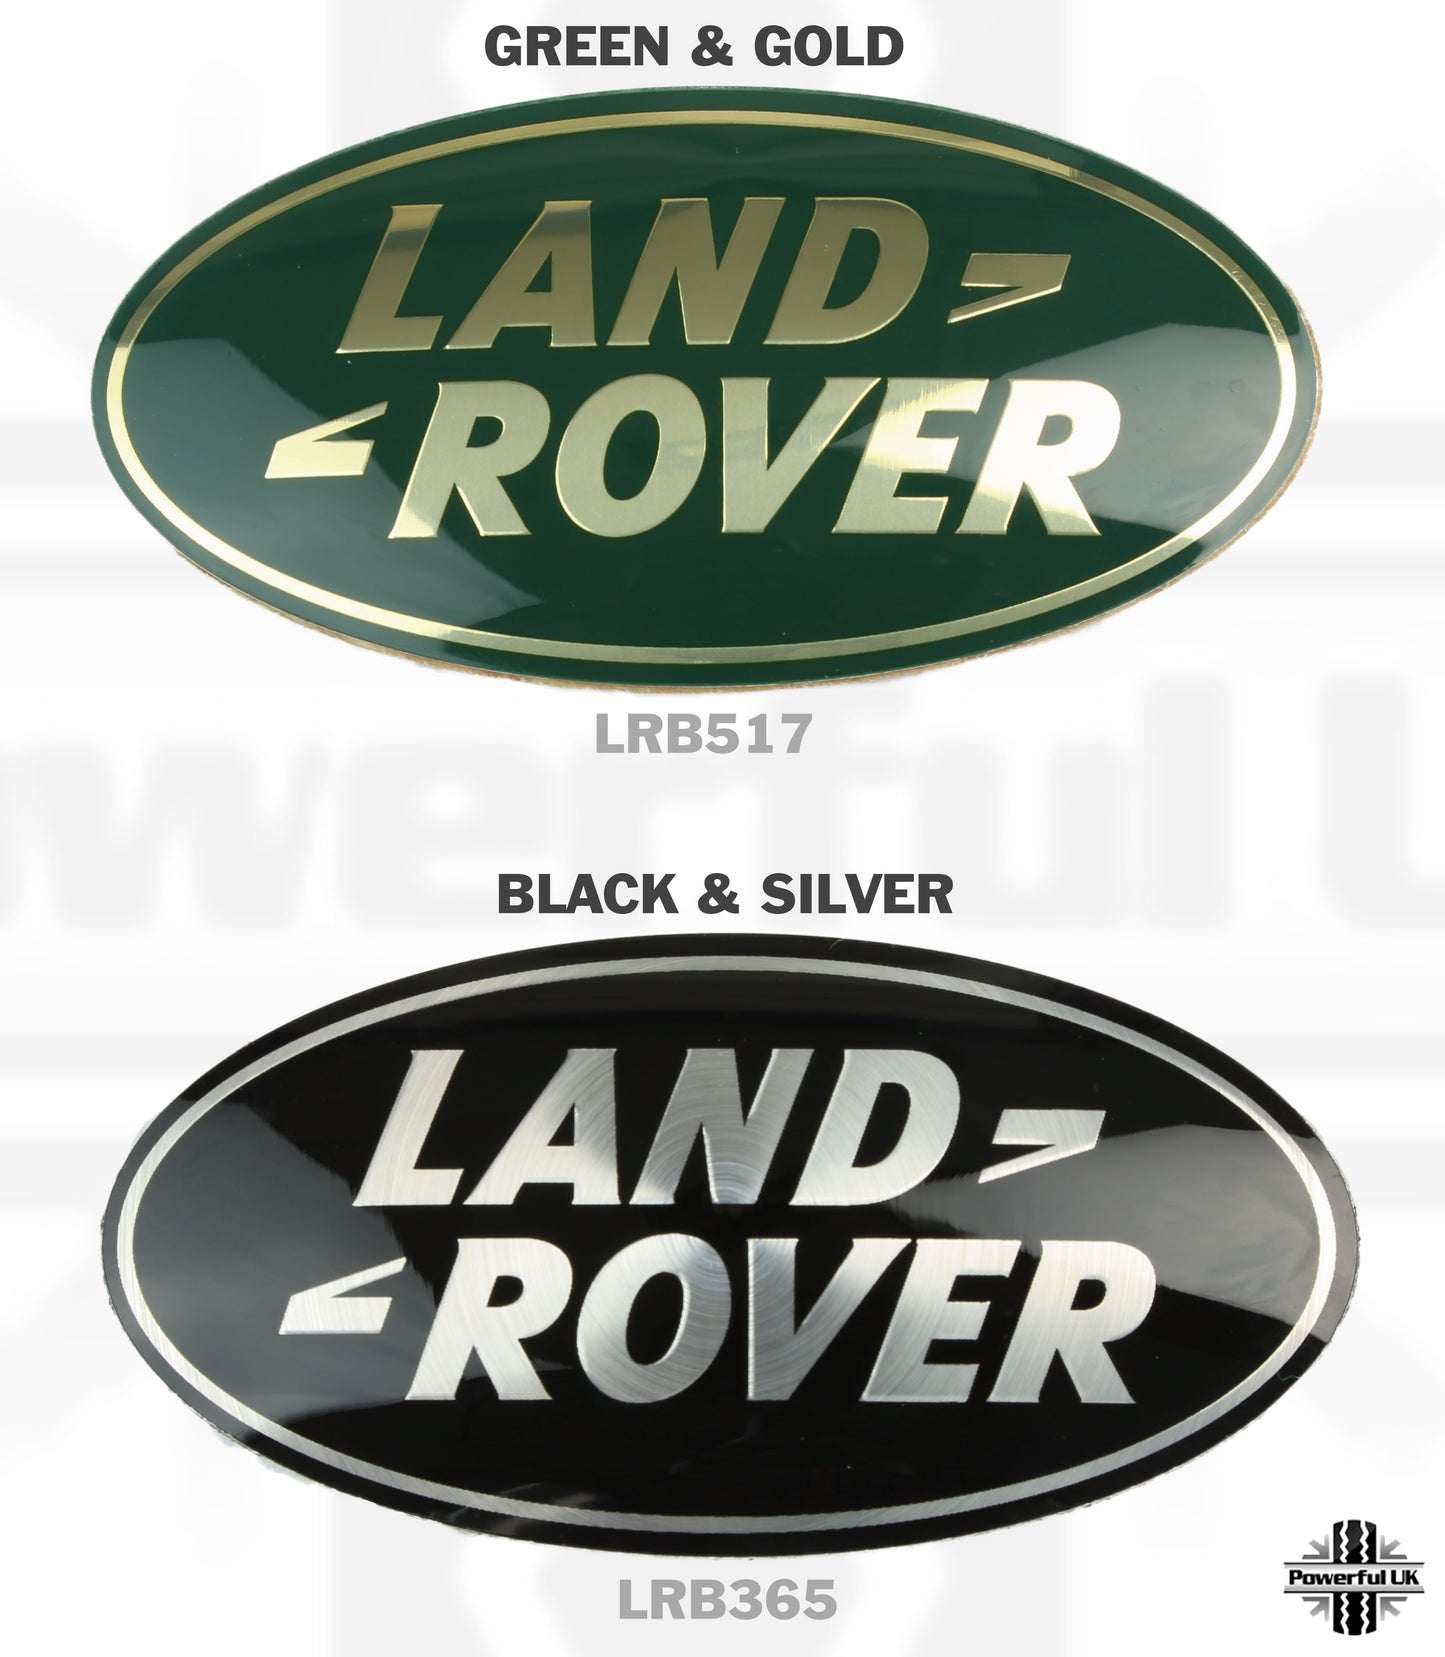 Genuine Front Grille Badge - Green & Gold - for Land Rover Freelander 1